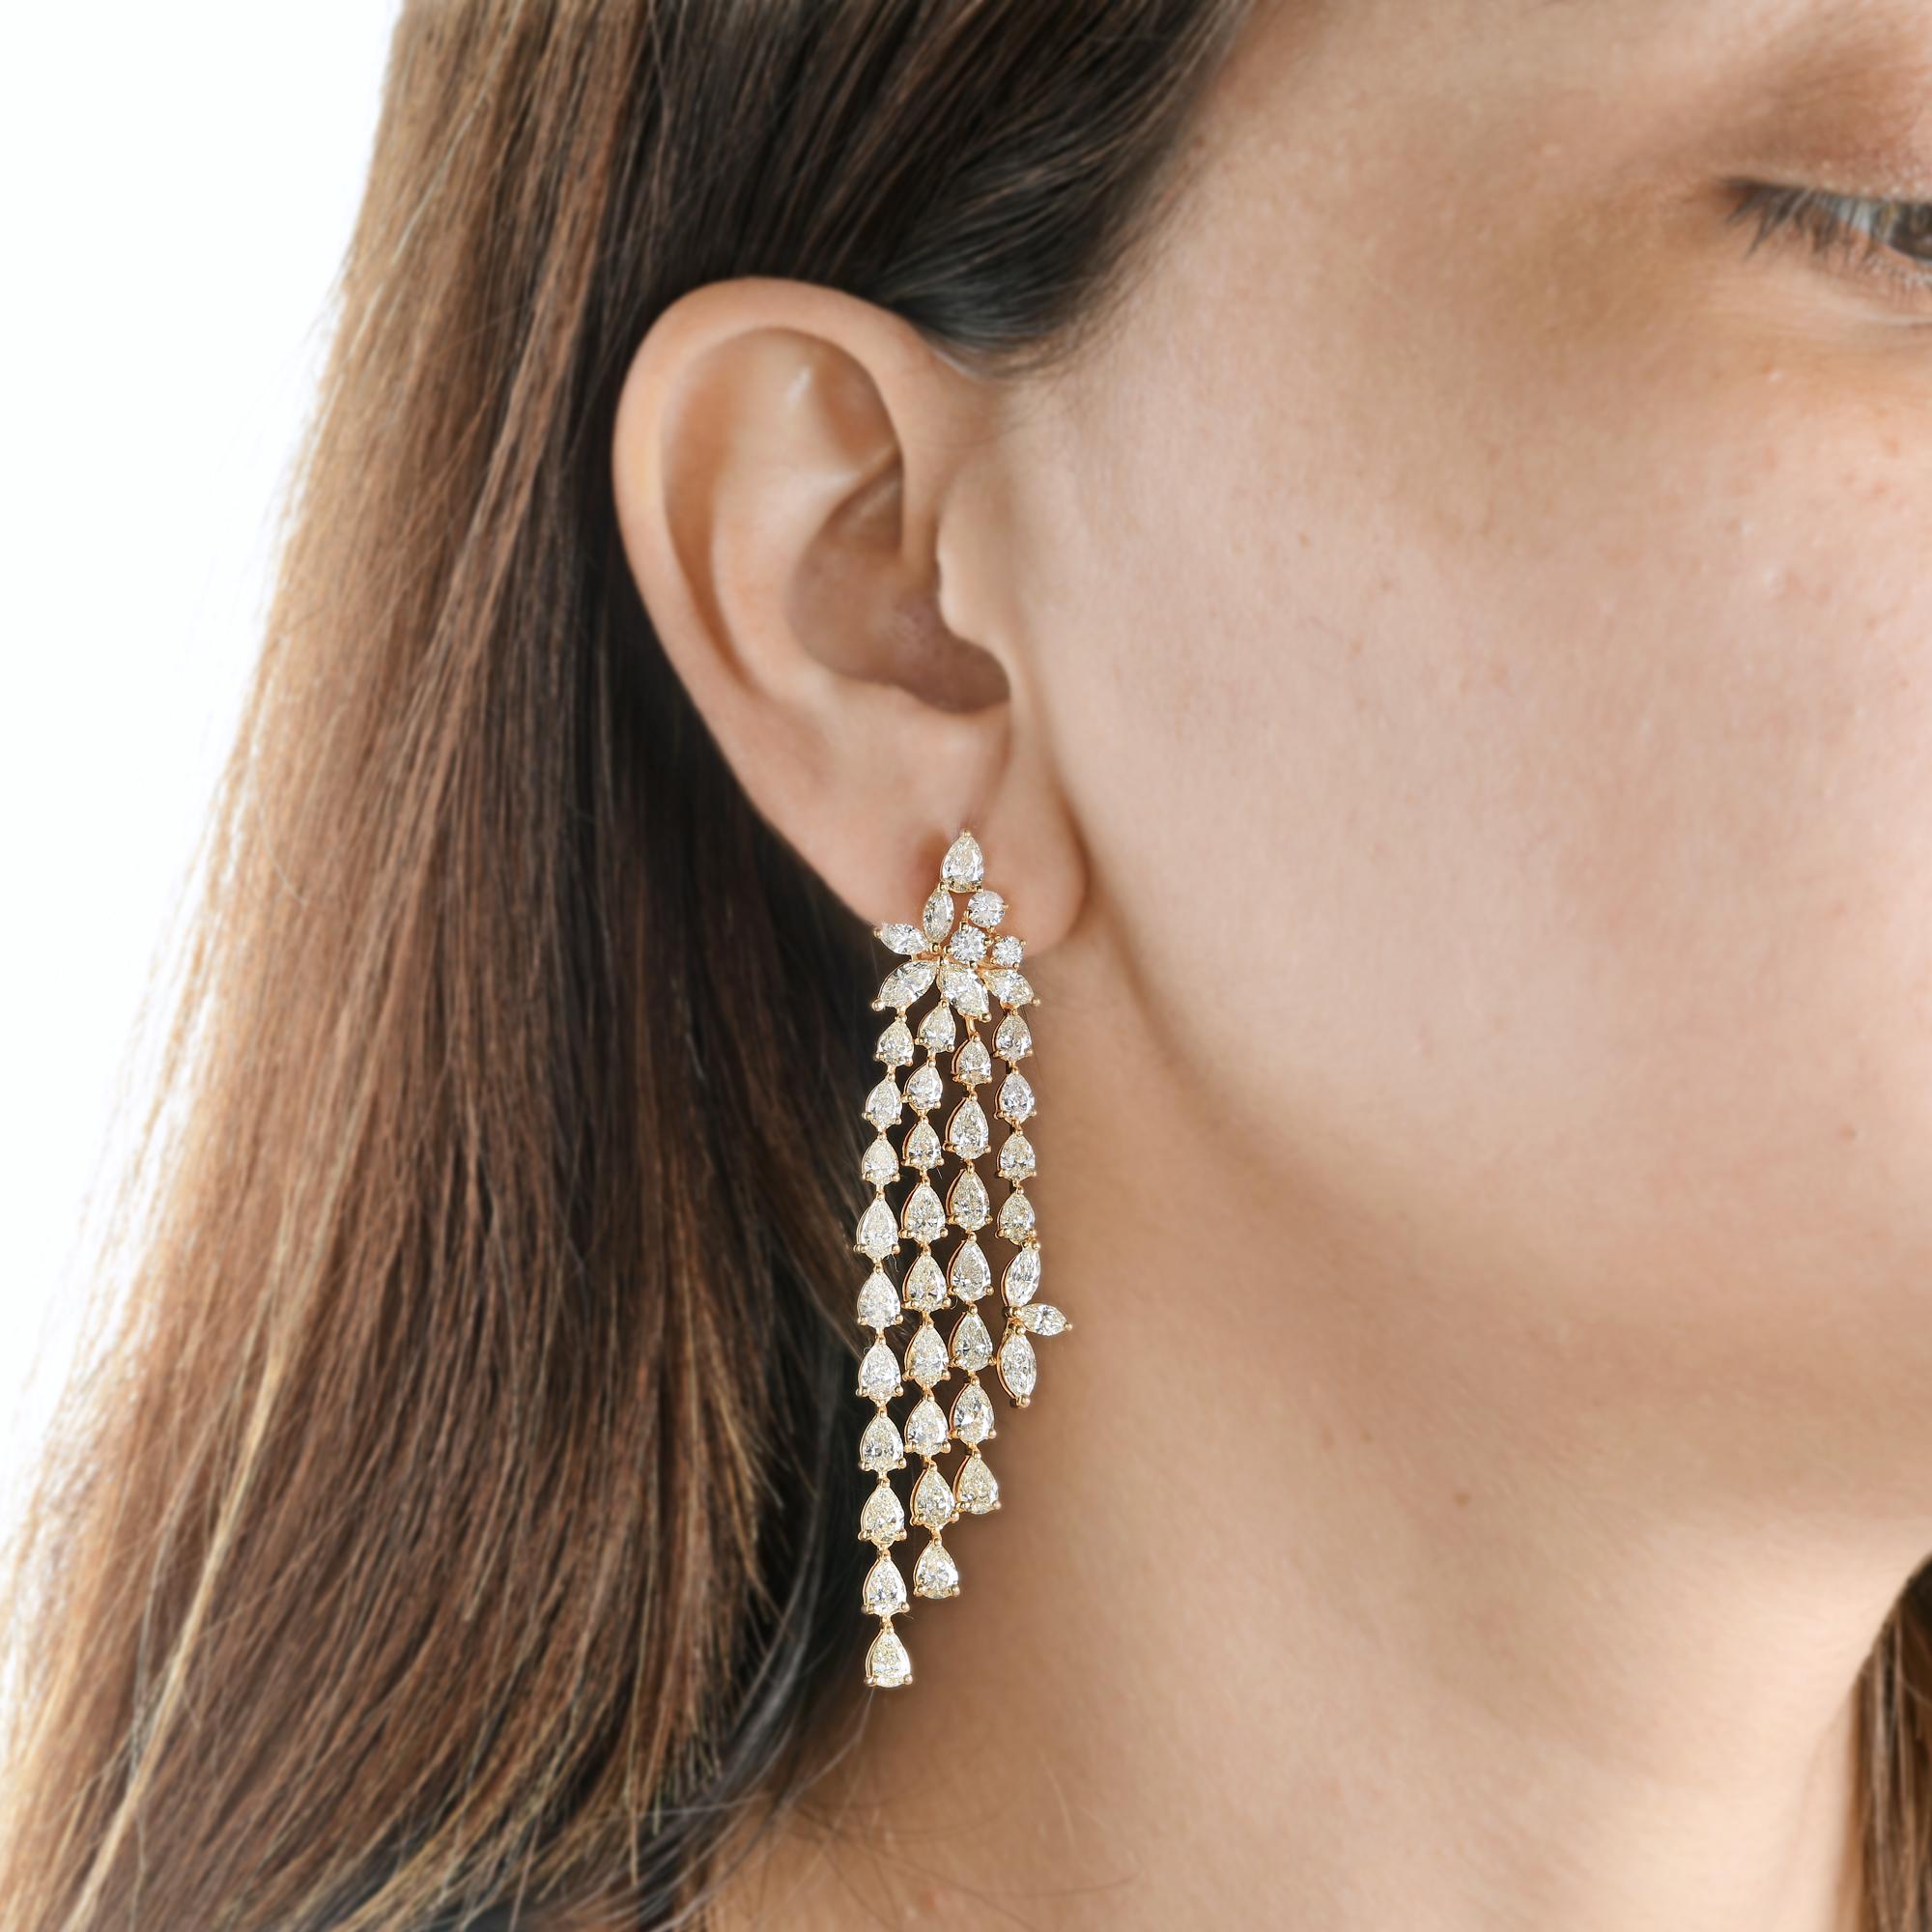 Modern Pear Shape Diamond Chandelier Earrings 18 Karat Yellow Gold Handmade Jewelry For Sale